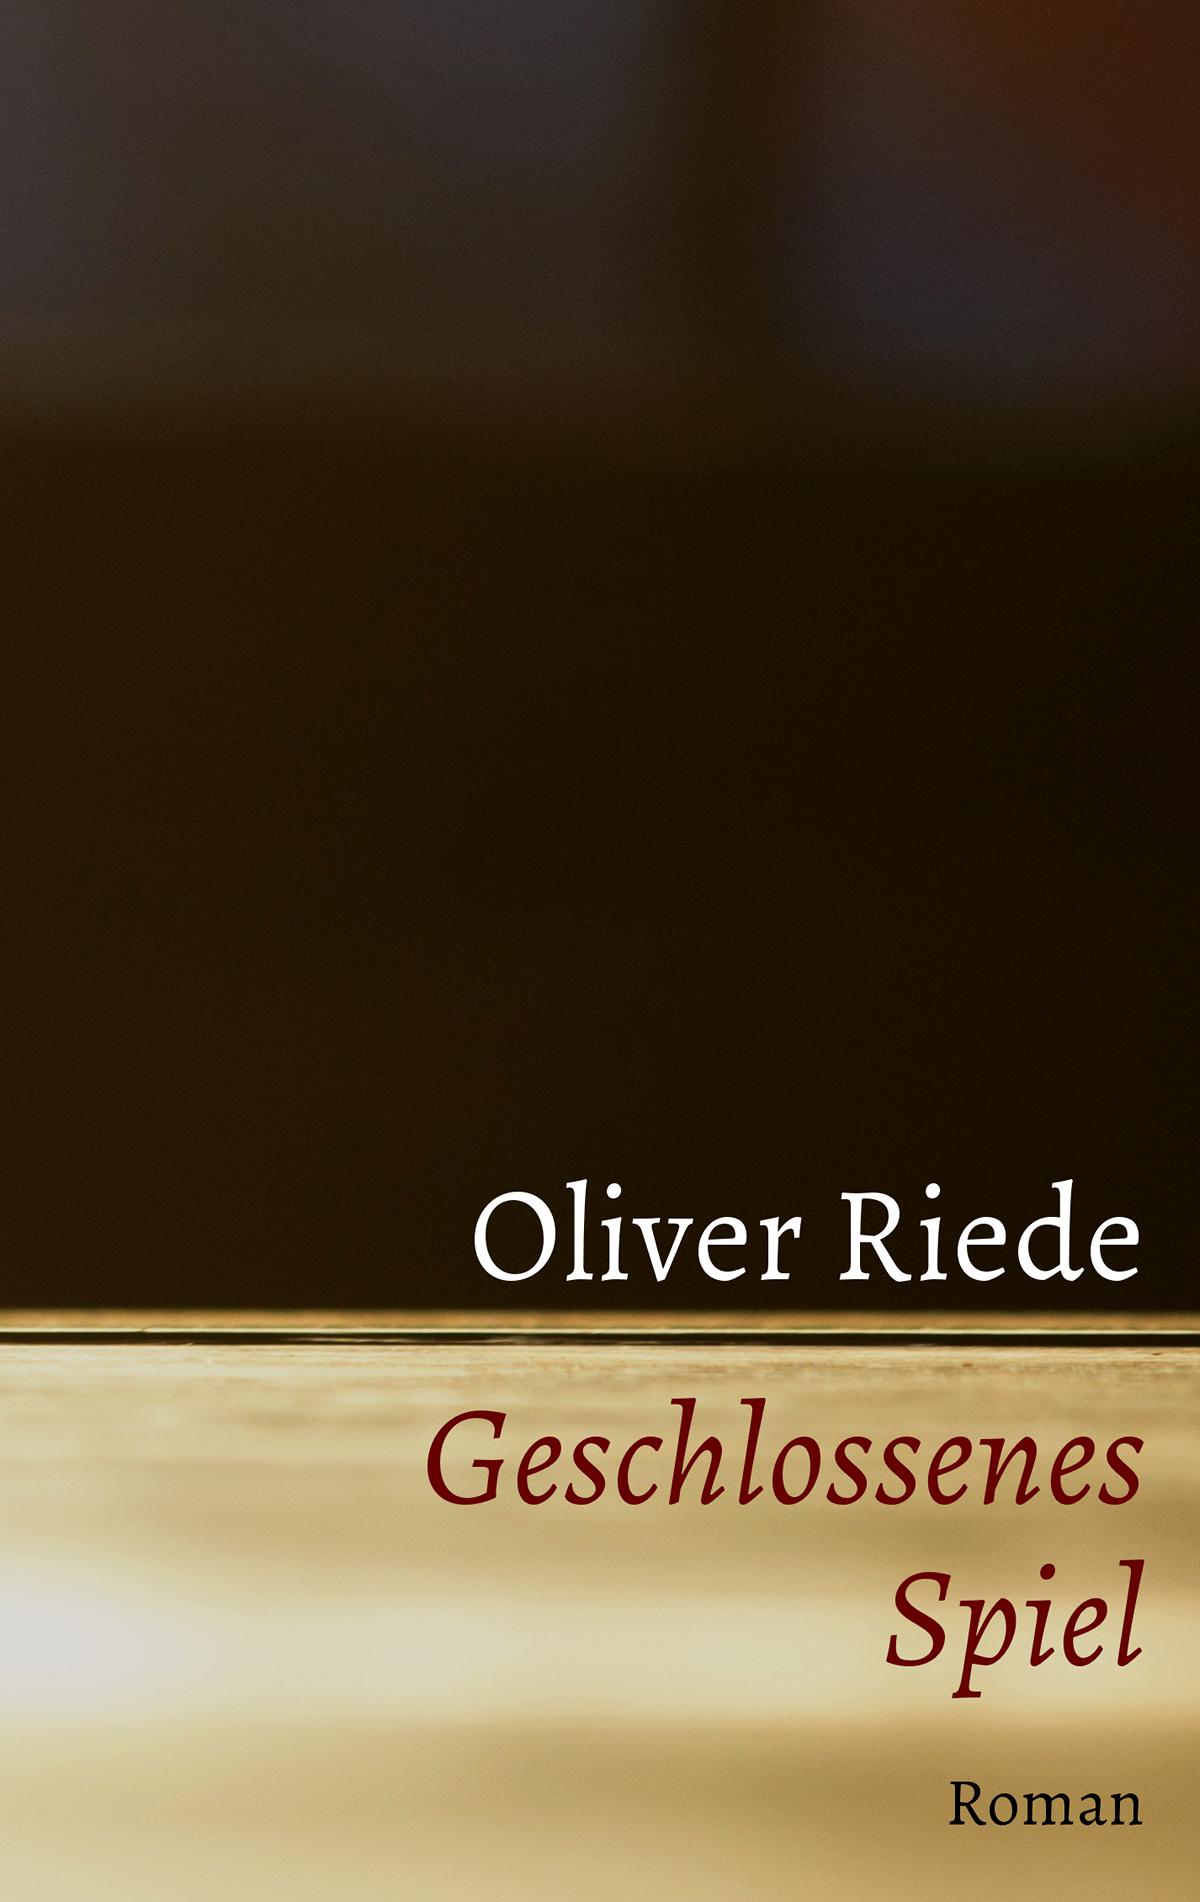 Cover von Geschlossenes Spiel, einem Roman von Oliver Riede